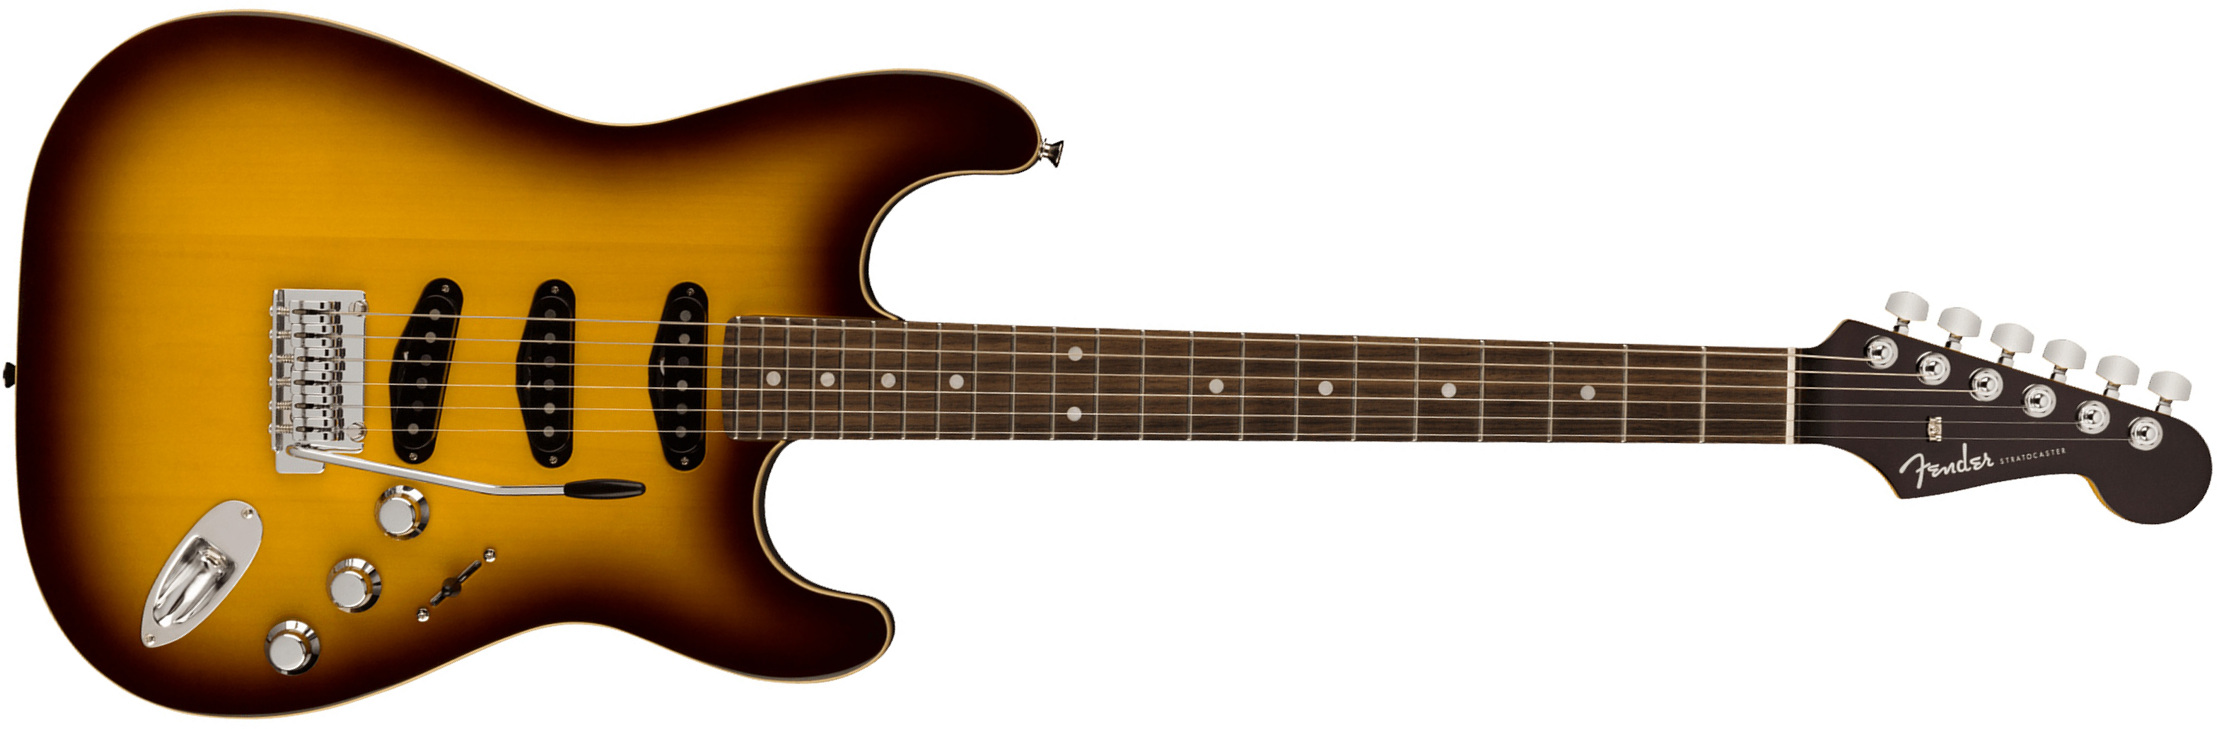 Fender Strat Aerodyne Special Jap 3s Trem Rw - Chocolate Burst - Elektrische gitaar in Str-vorm - Main picture